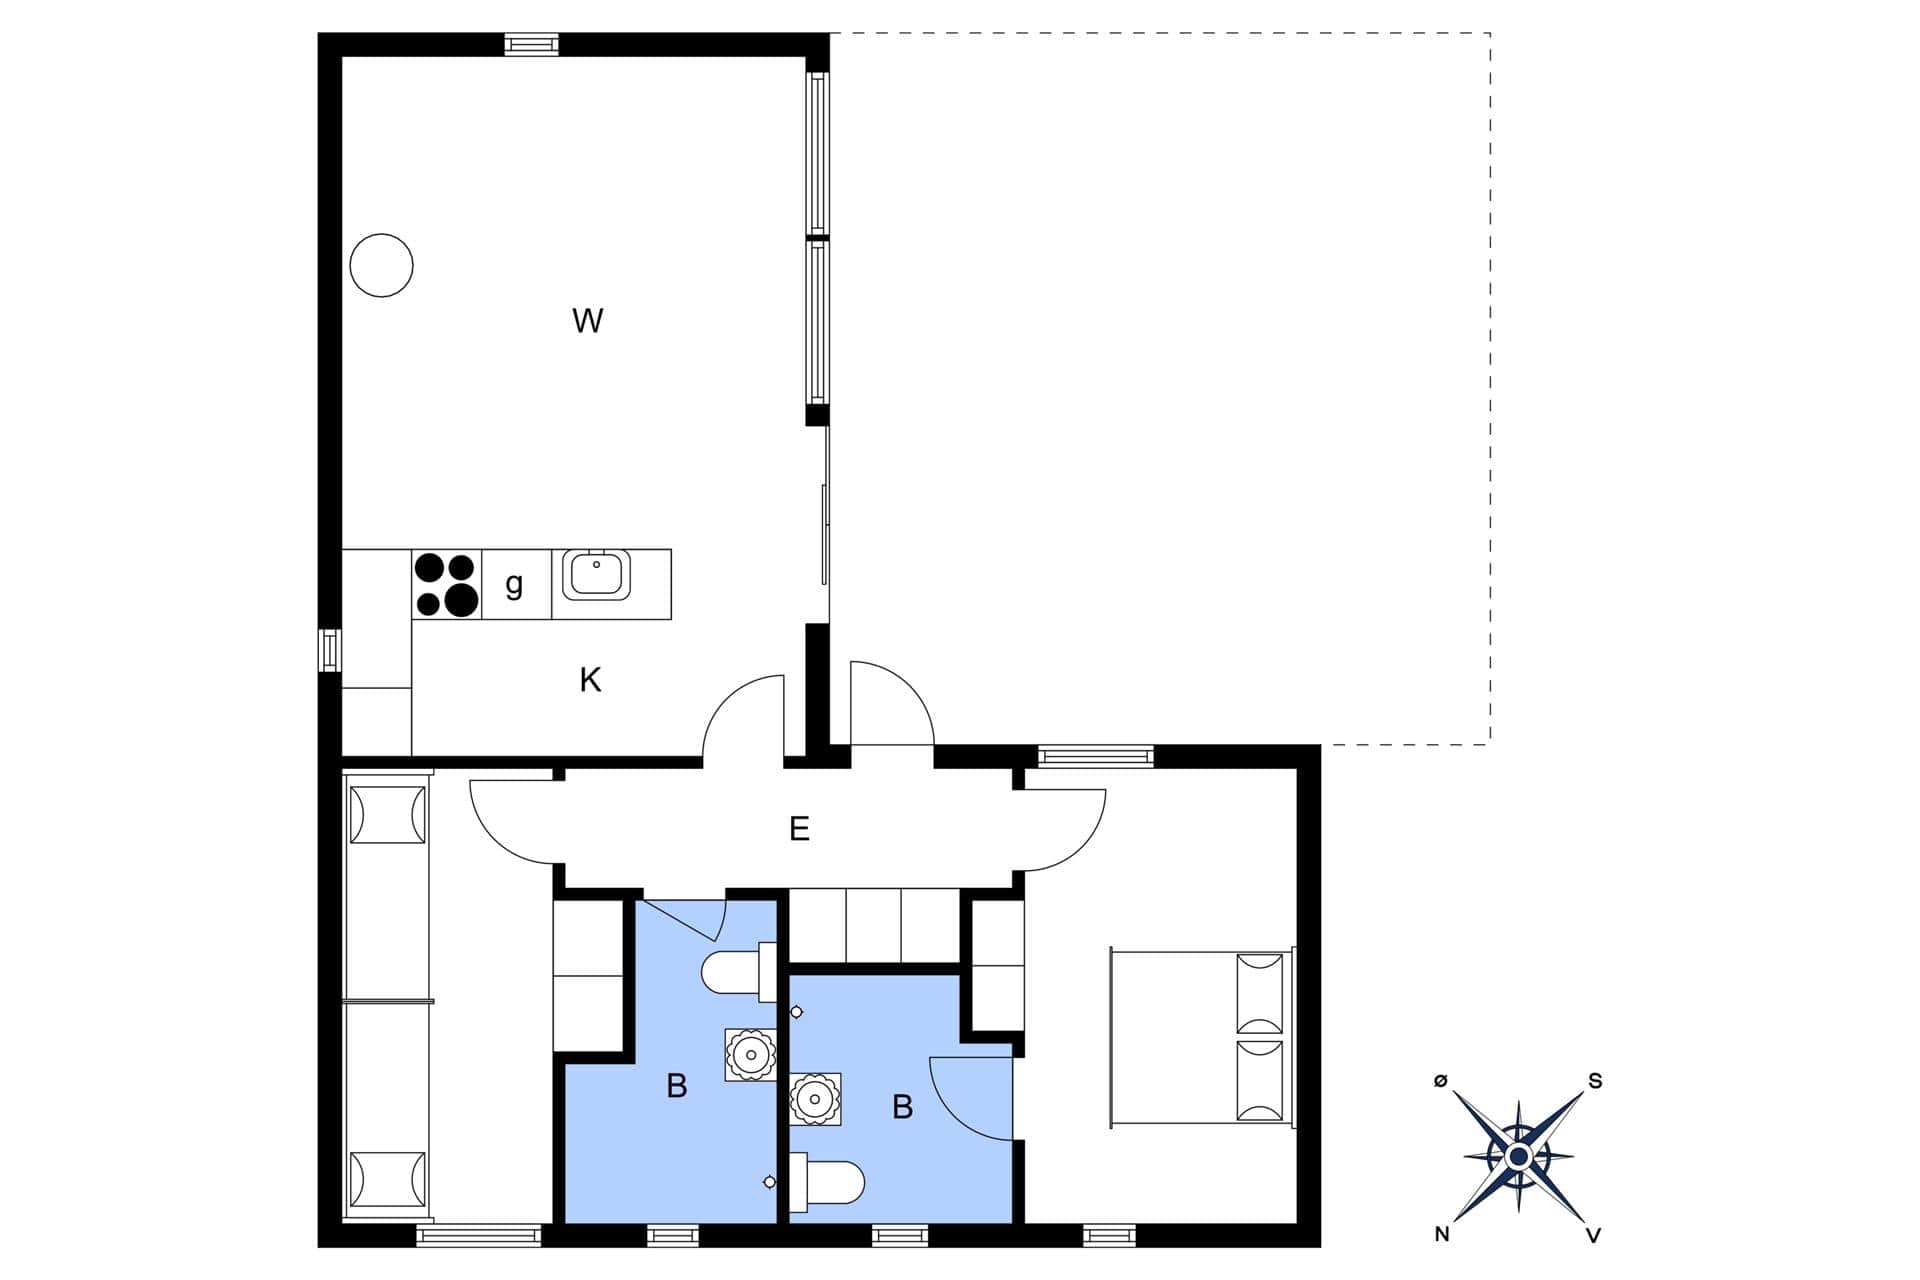 Interior 9-3 Holiday-home M642754, Oddevejen 8, DK - 5500 Middelfart